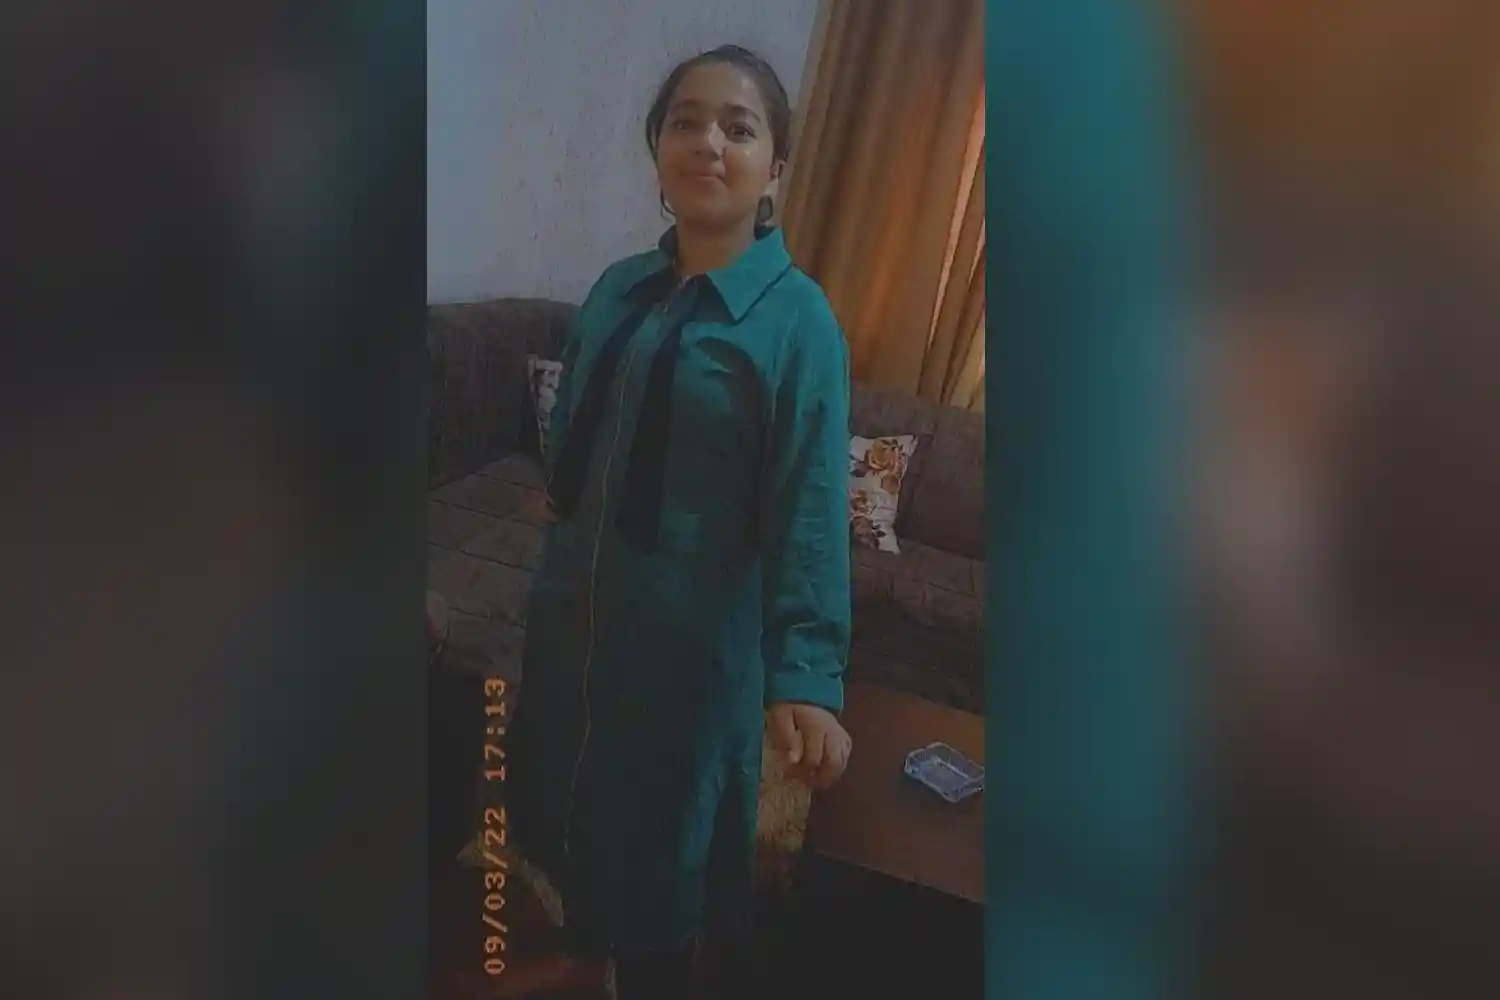 طالبة مدرسة مفقودة منذ الأمس في عمان.. وعائلتها تناشد